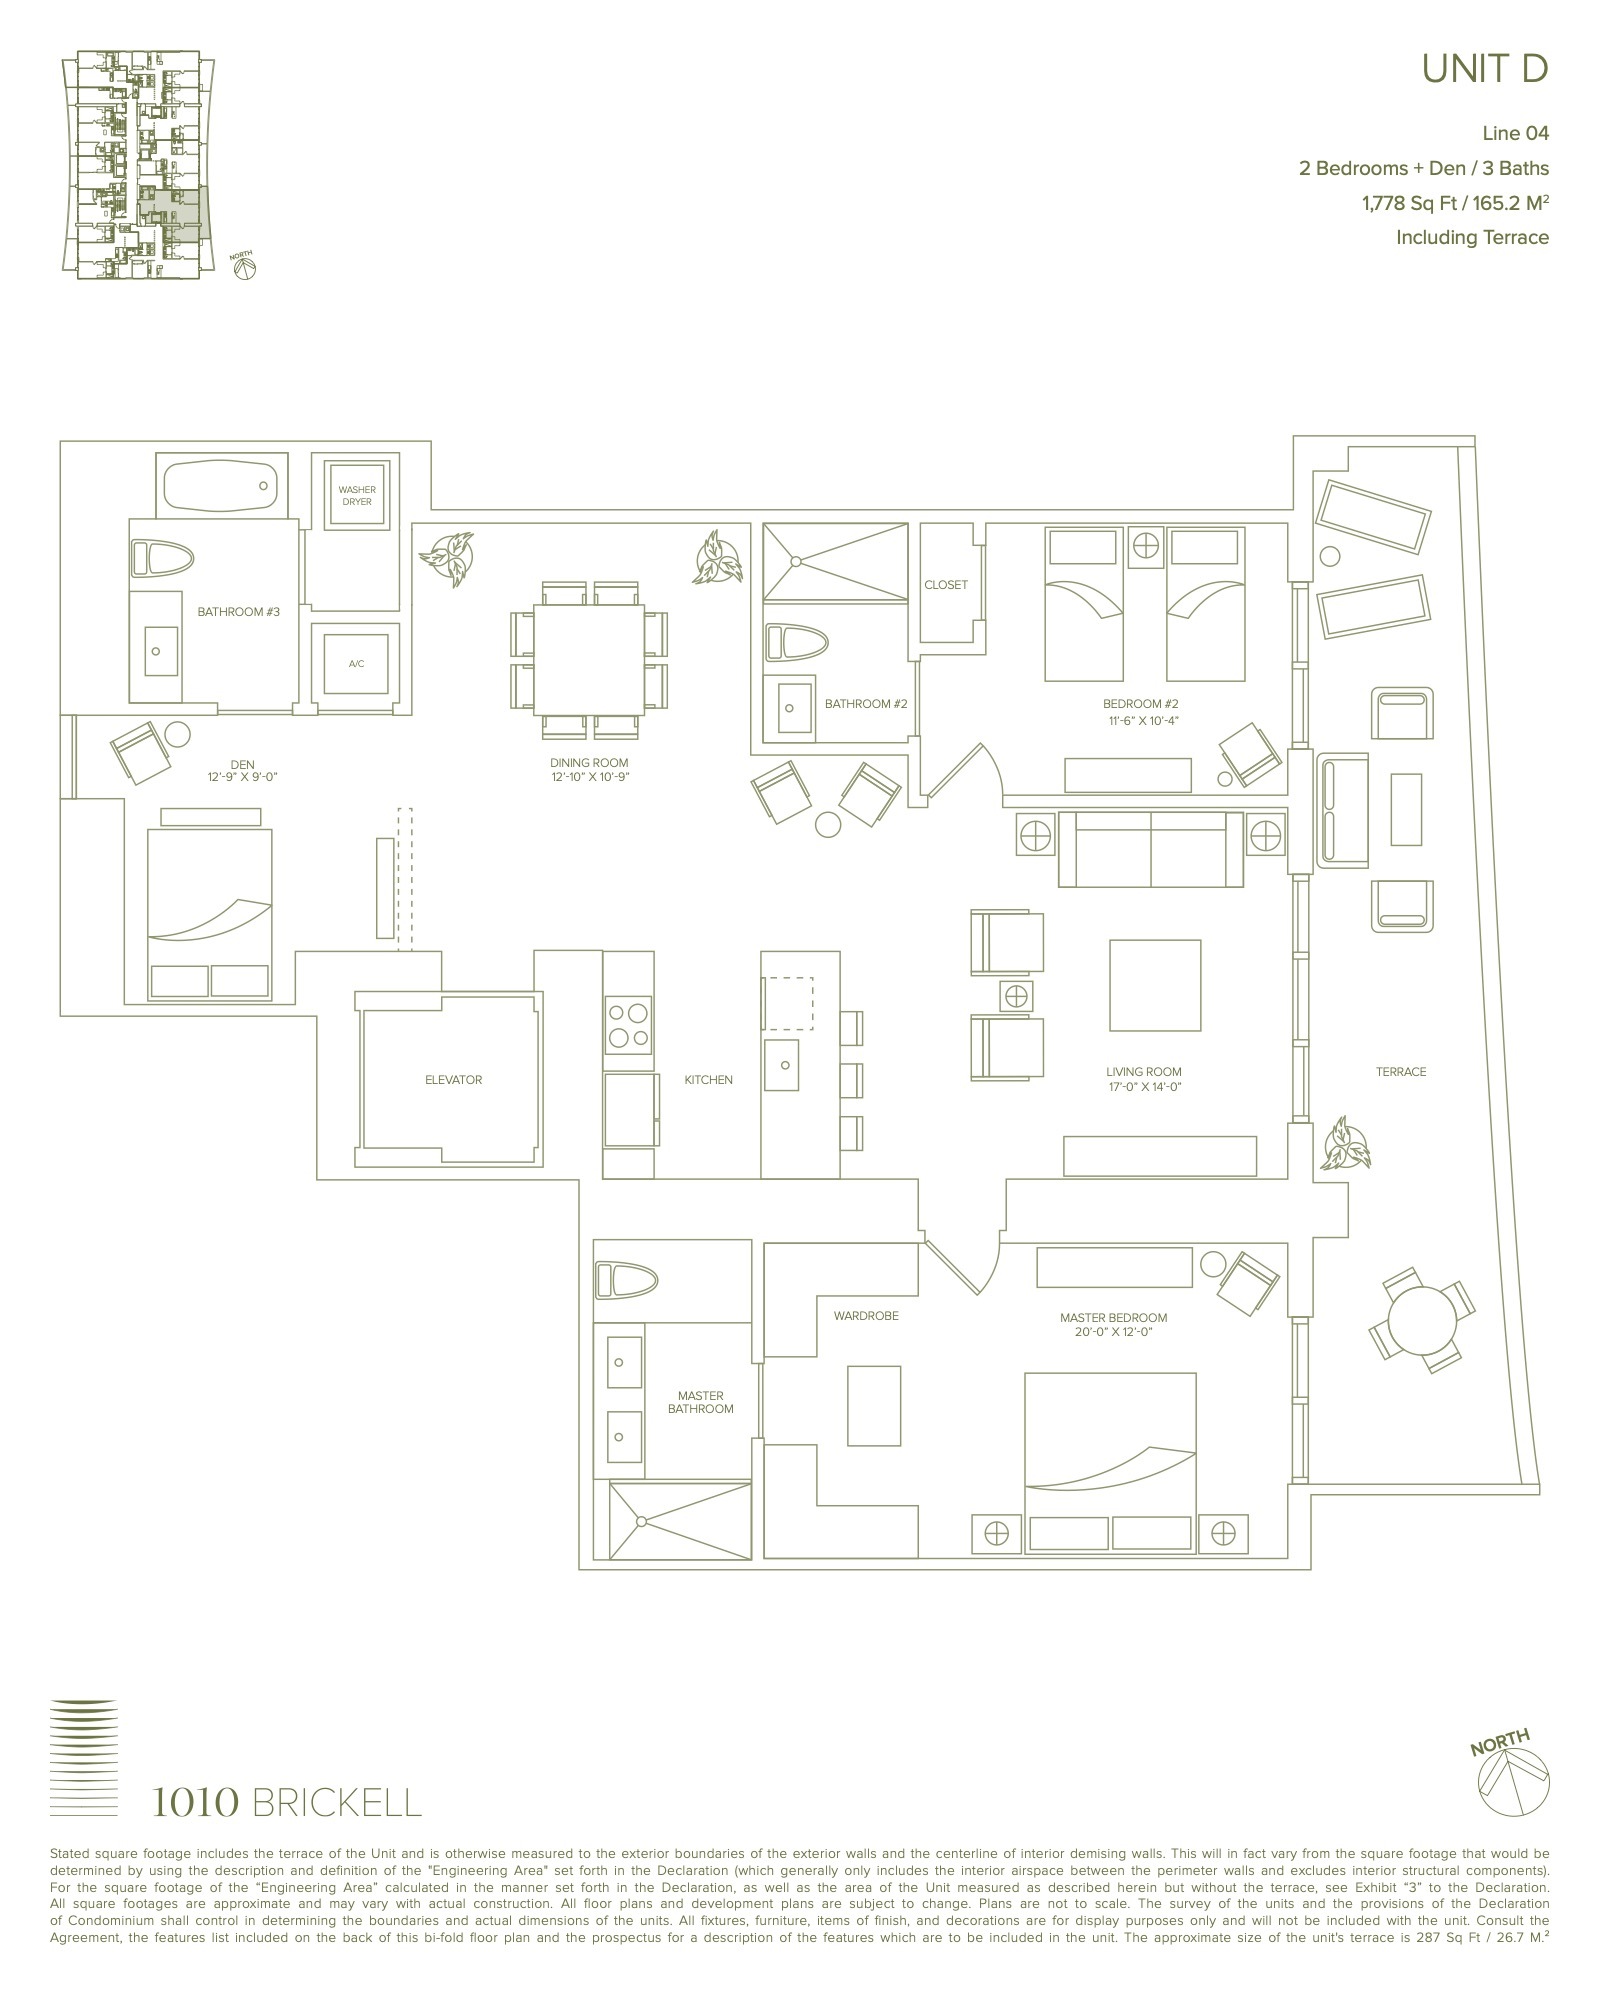 Floor Plan for 1010 Brickell Floorplans, Unit D